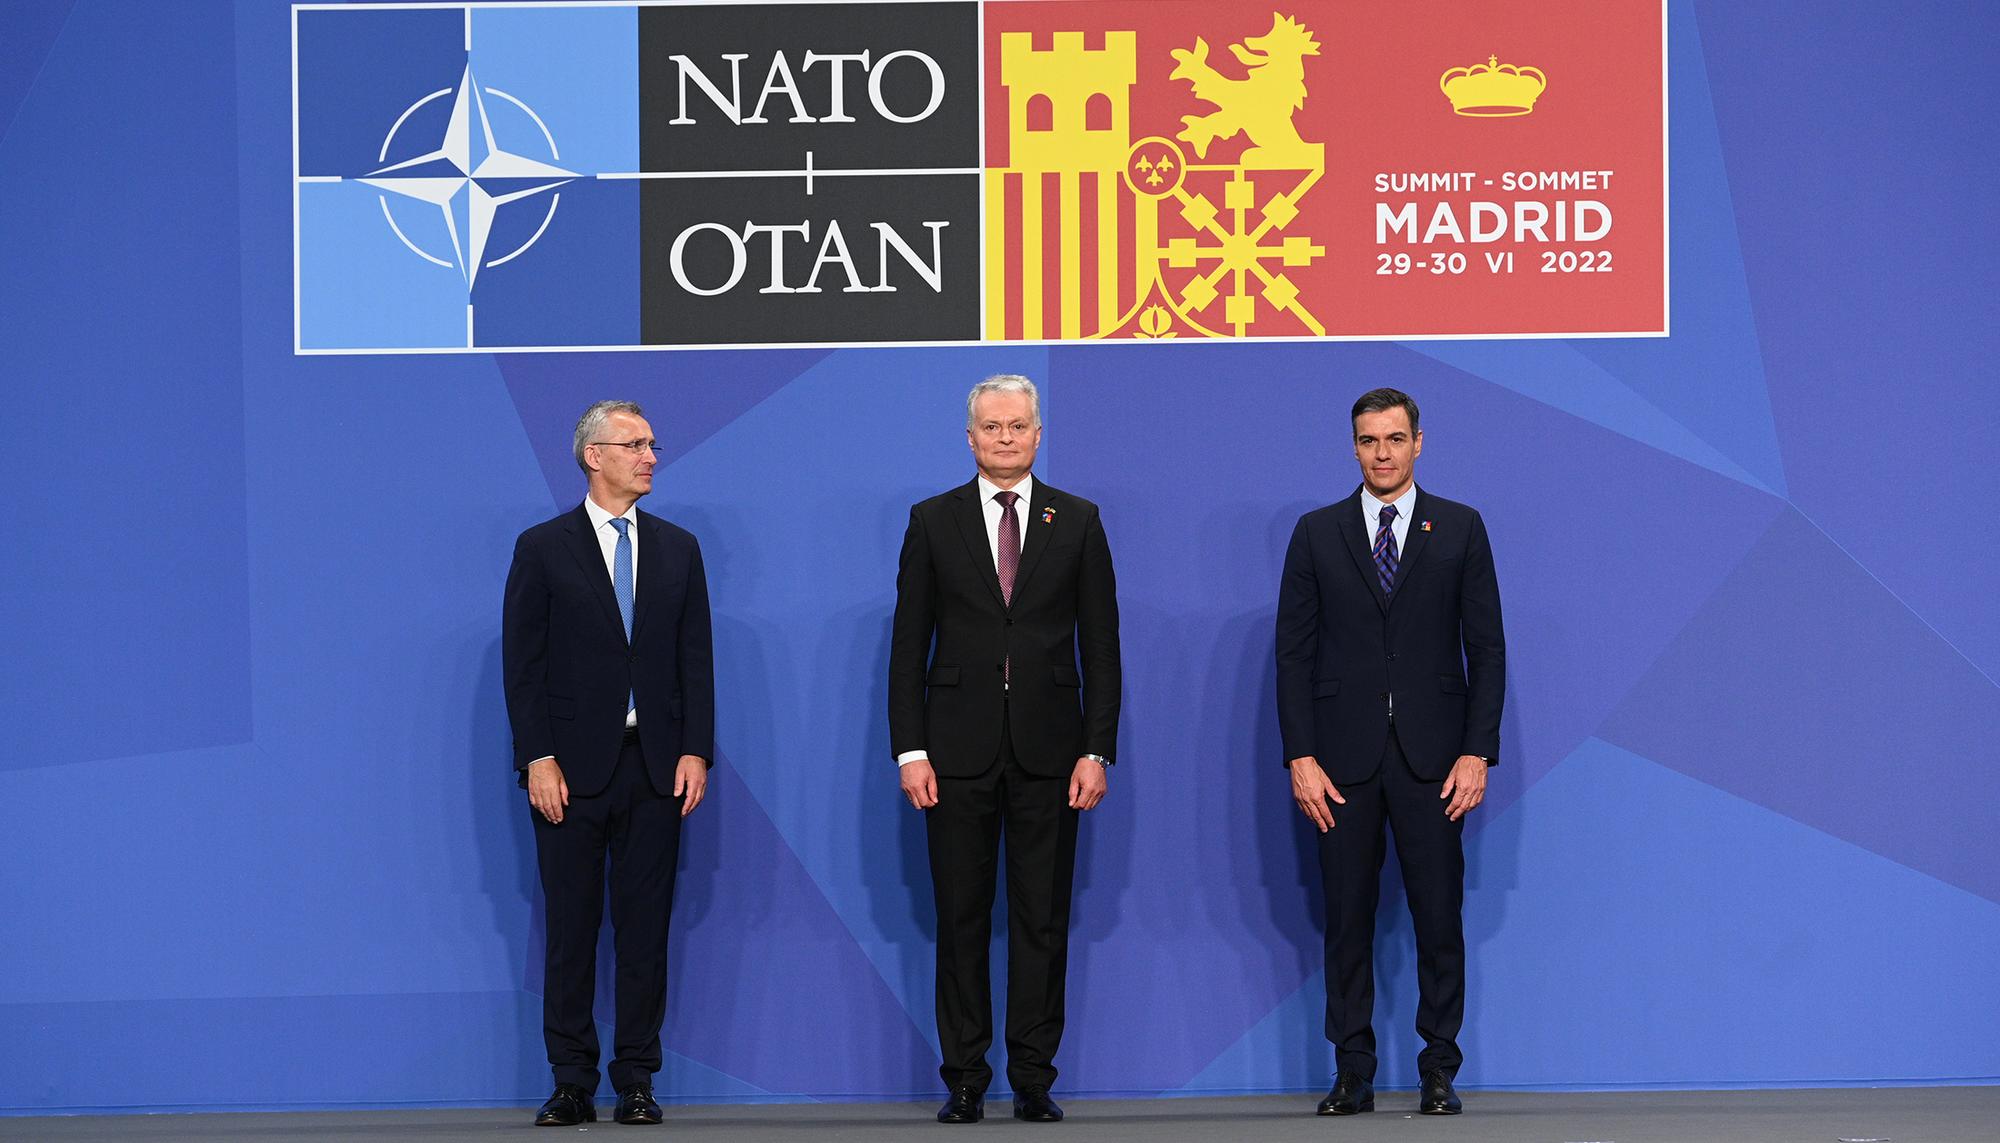 Cumbre de la OTAN Madrid 2022 Ifema - 31